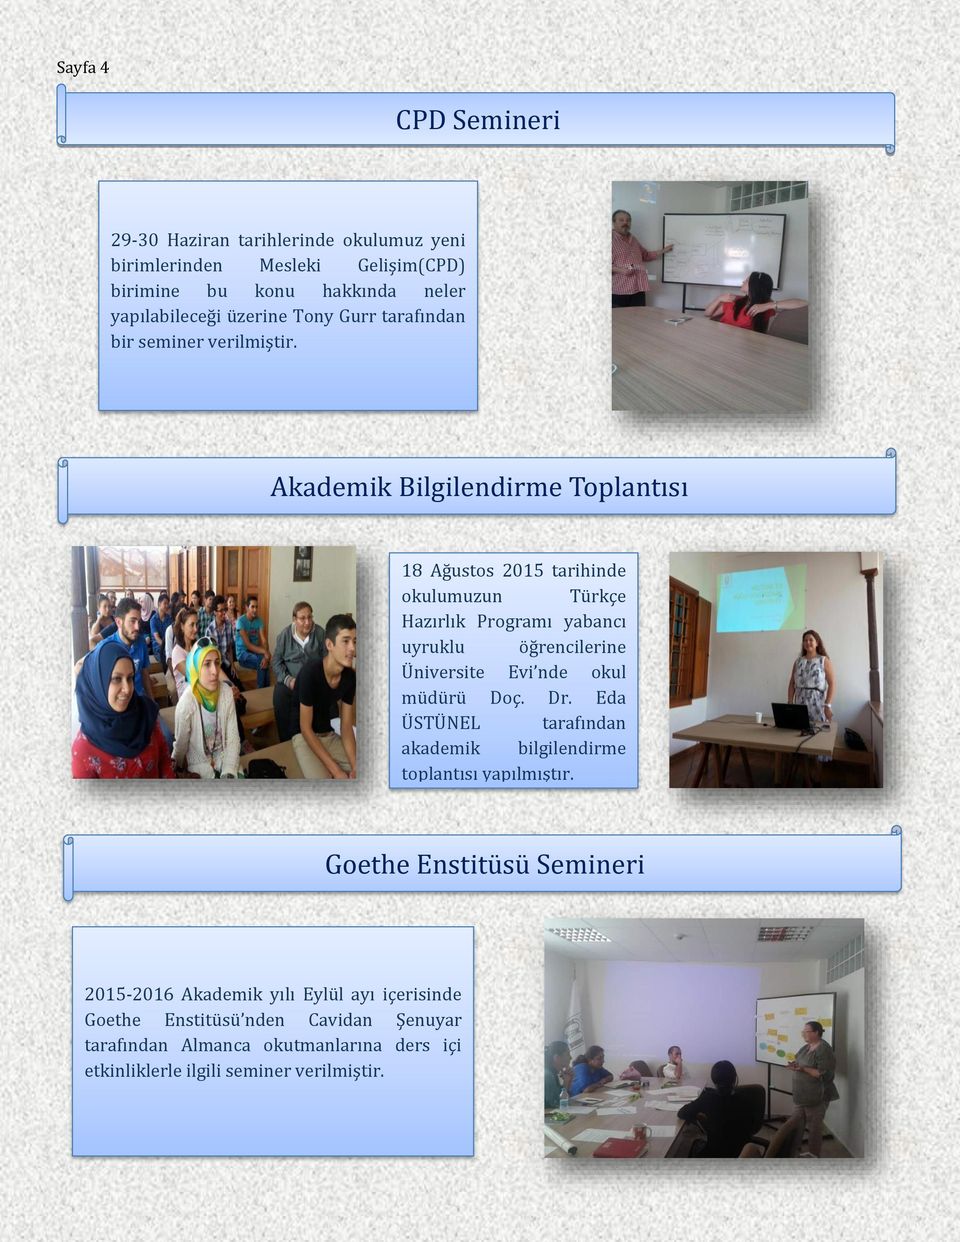 Akademik Bilgilendirme Toplantısı 18 Ağustos 2015 tarihinde okulumuzun Türkçe Hazırlık Programı yabancı uyruklu öğrencilerine Üniversite Evi nde okul müdürü